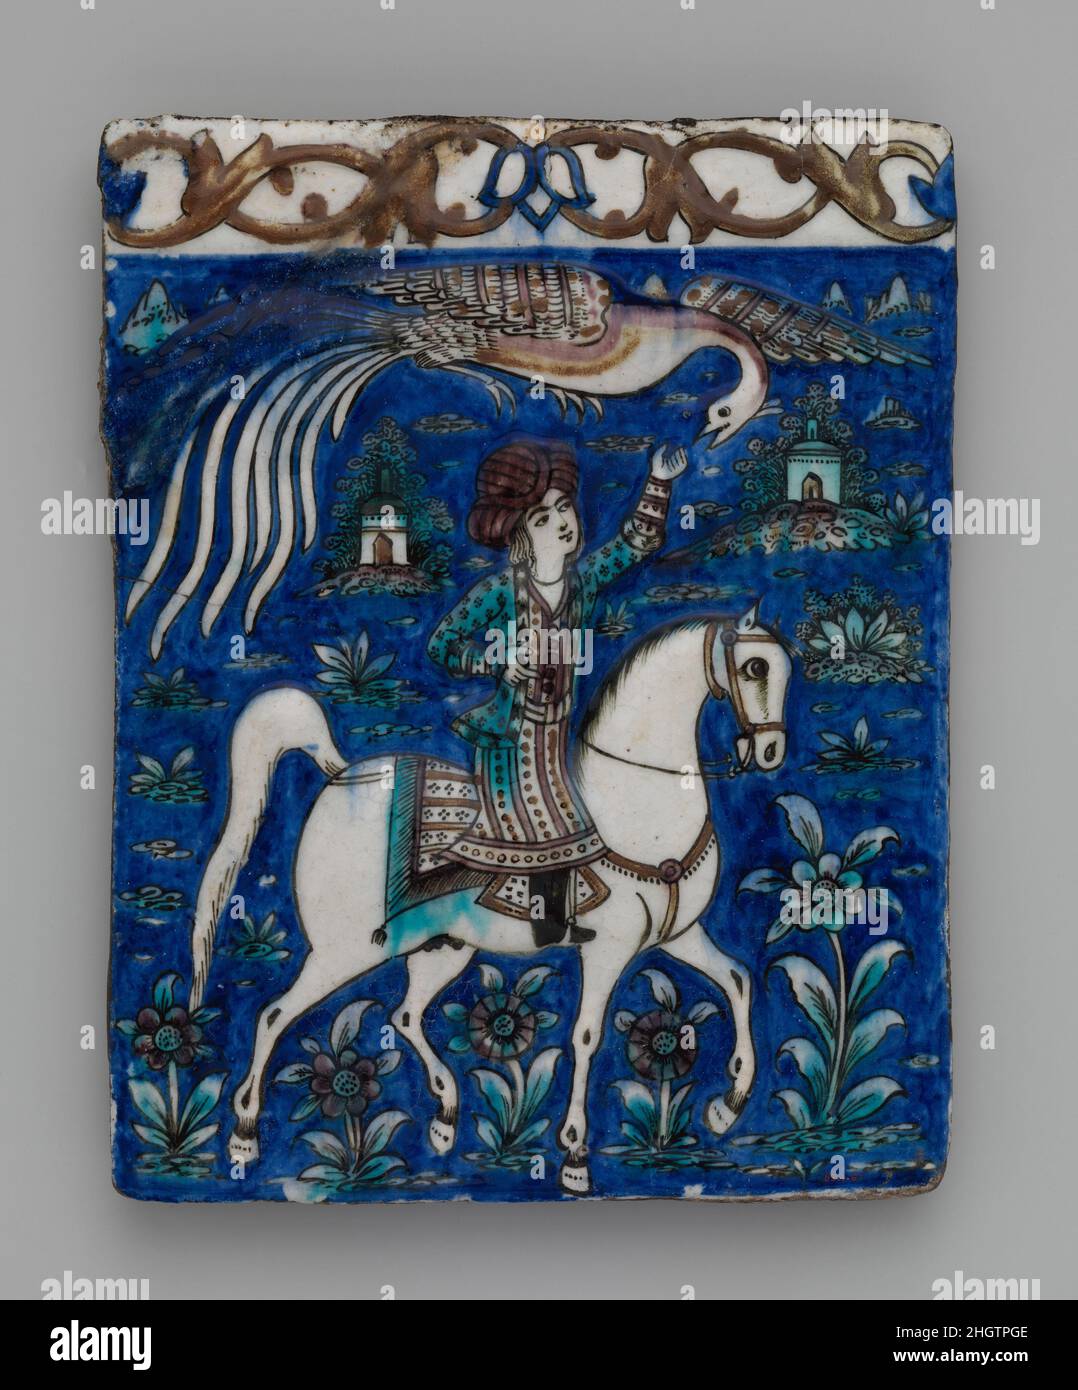 Carreaux avec l'image d'un prince à cheval deuxième moitié du 19th siècle principalement produits à Téhéran, la capitale de Qajar, des frises continues de carreaux rectangulaires sous-vernis, comme cet exemple, étaient communs dans l'architecture du XIXe siècle.Ici, un jeune homme à cheval est représenté avec sa main étendue vers Huma, le fabuleux oiseau, l'incarnation de la santé et de la force, planant sur sa tête.Seule la royauté est tombée sous l'ombre d'Huma, suggérant que le cavalier représenté ici est un prince.Carrelage avec une image de prince à cheval. Deuxième moitié du 19th siècle.Stonepaste ; moulé, po Banque D'Images